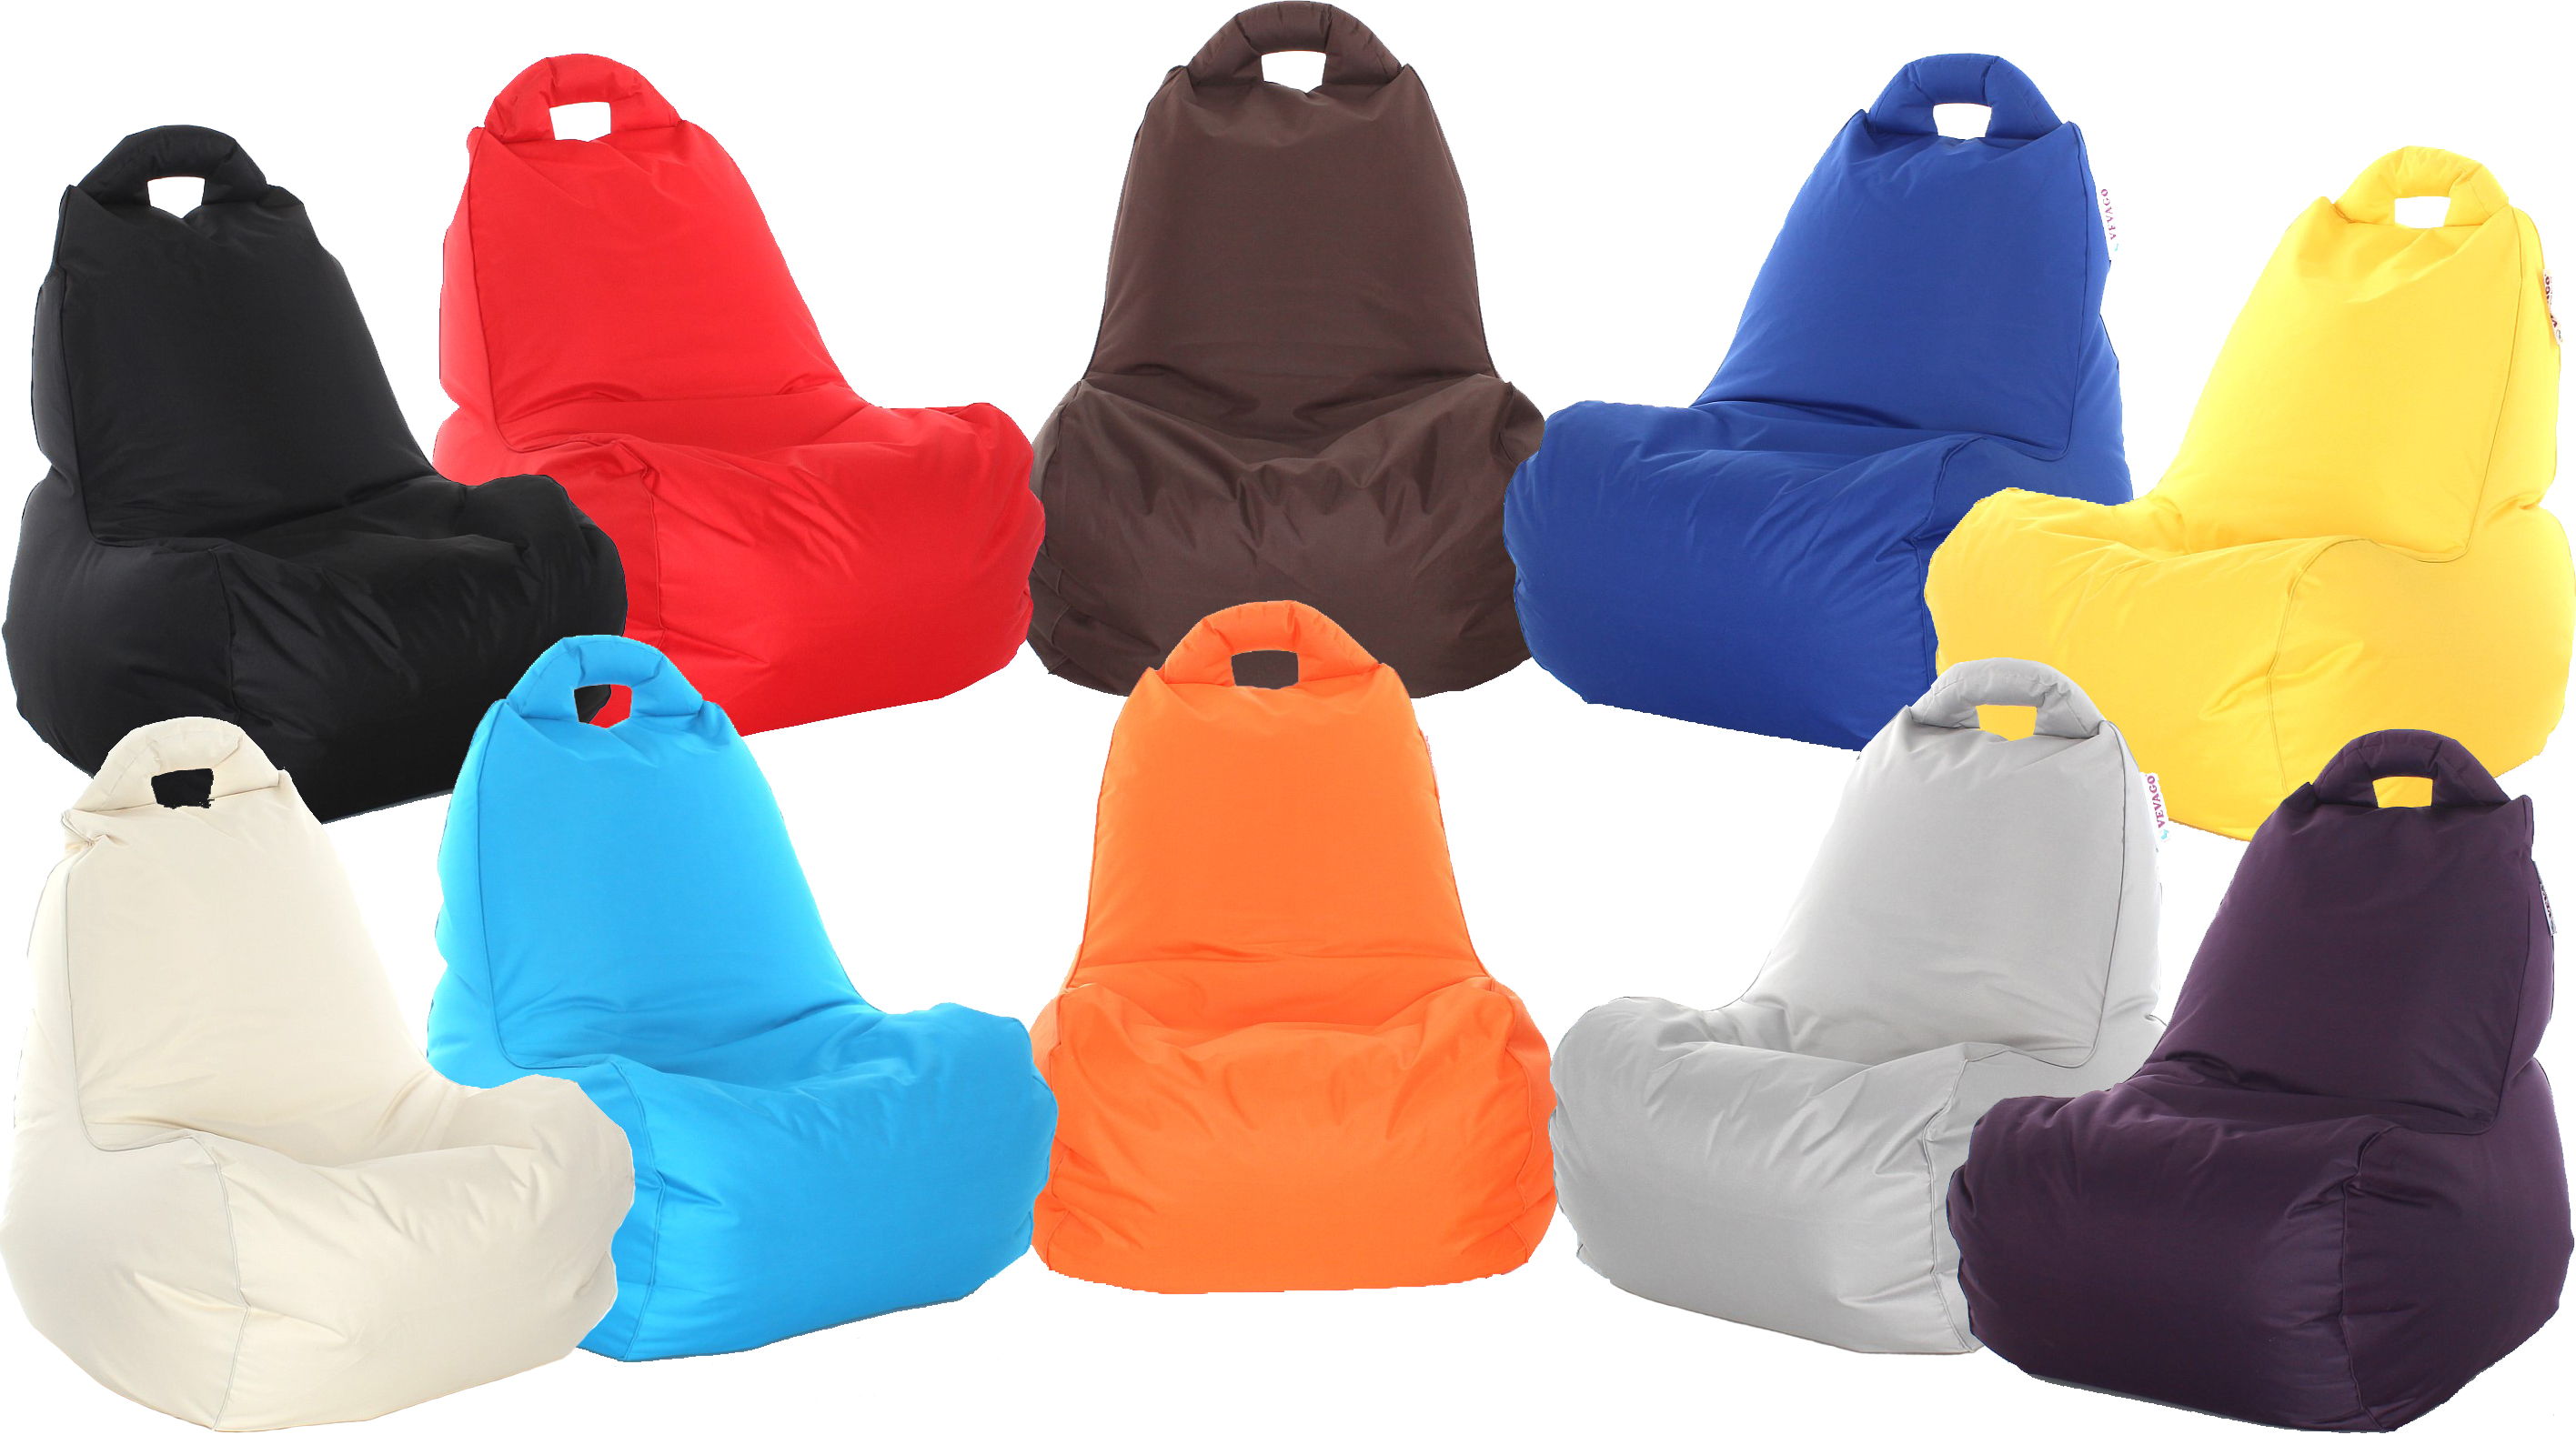 Neuheiten VEVAGO Sitzsack für drinnen und draußen in verschiedenen Farben